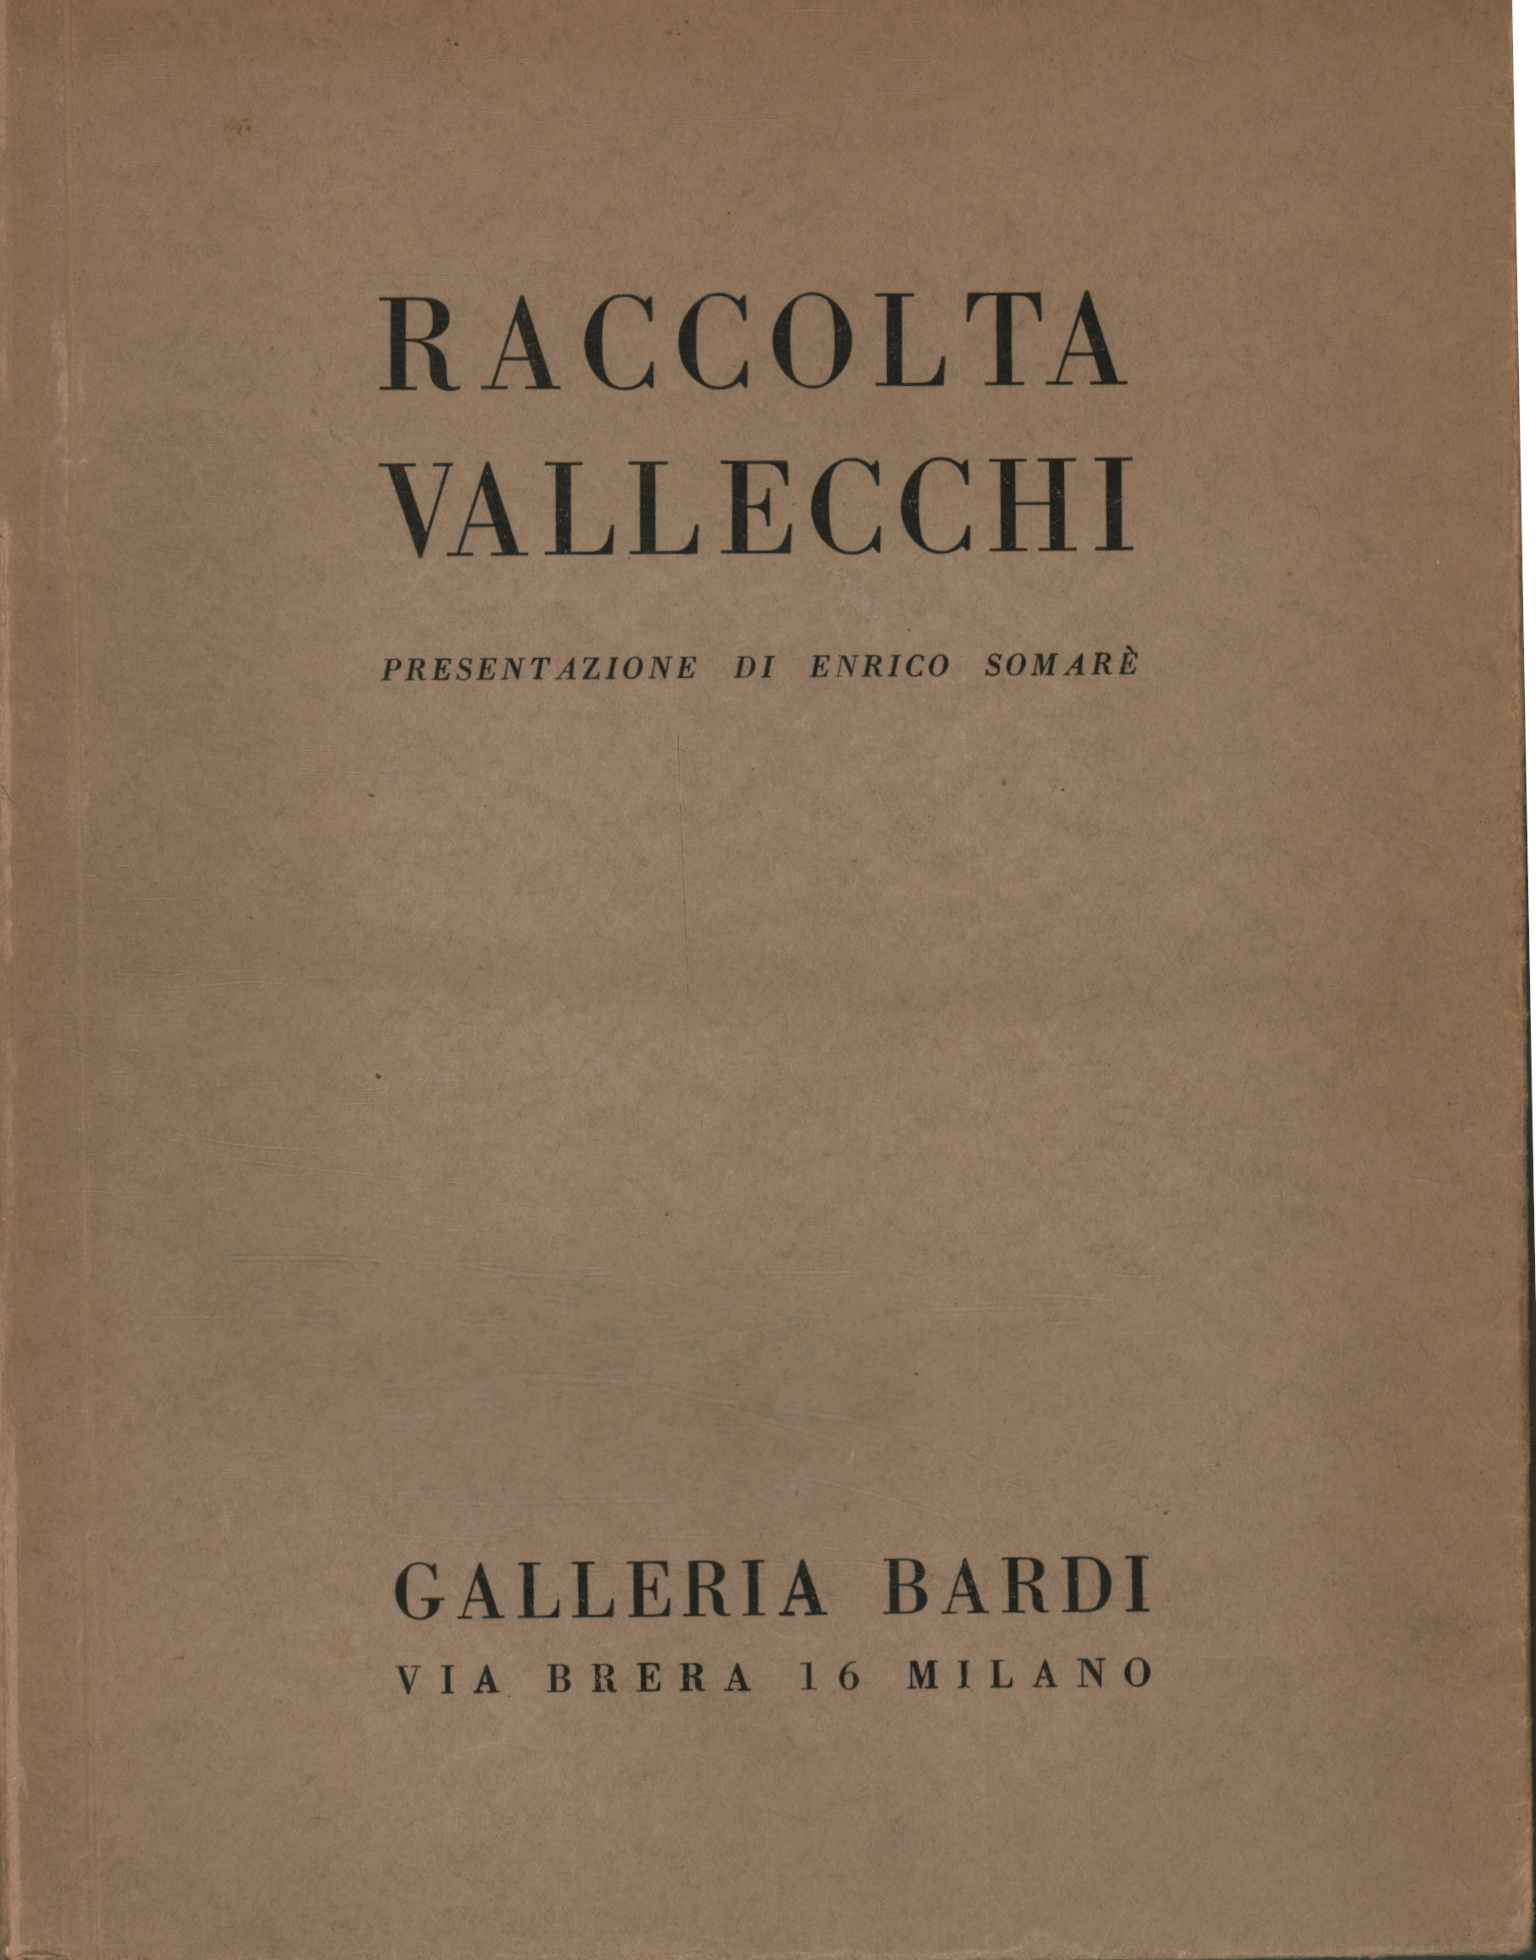 Collection Vallecchi